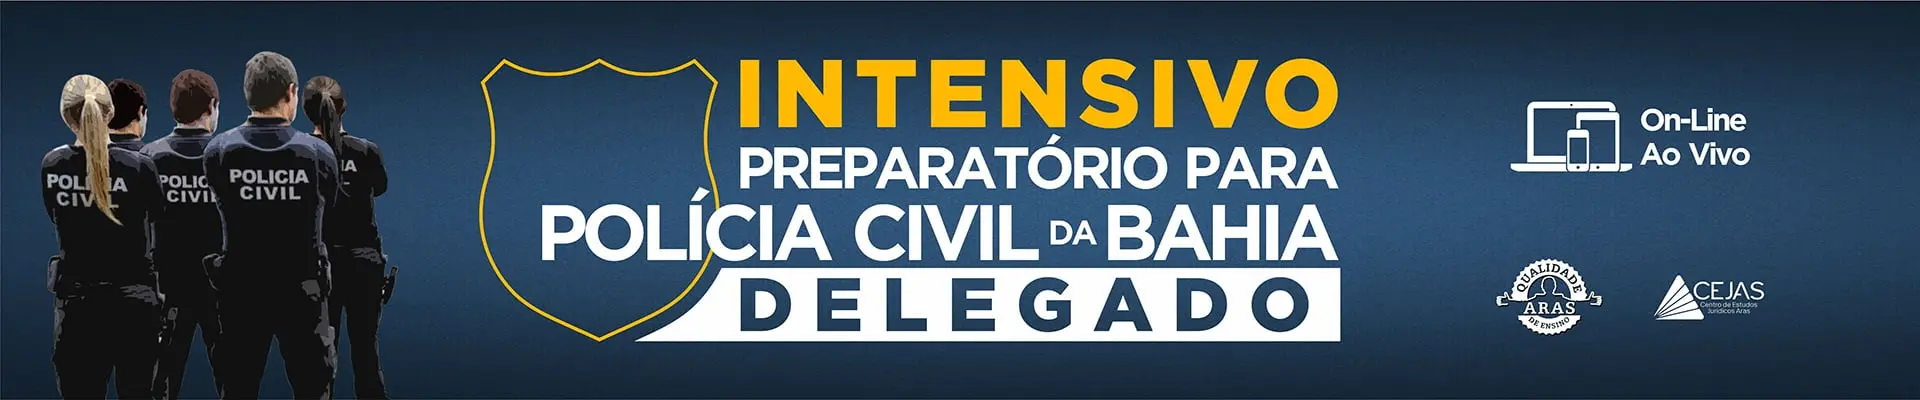 Delegado Polícia Civil da Bahia - Online